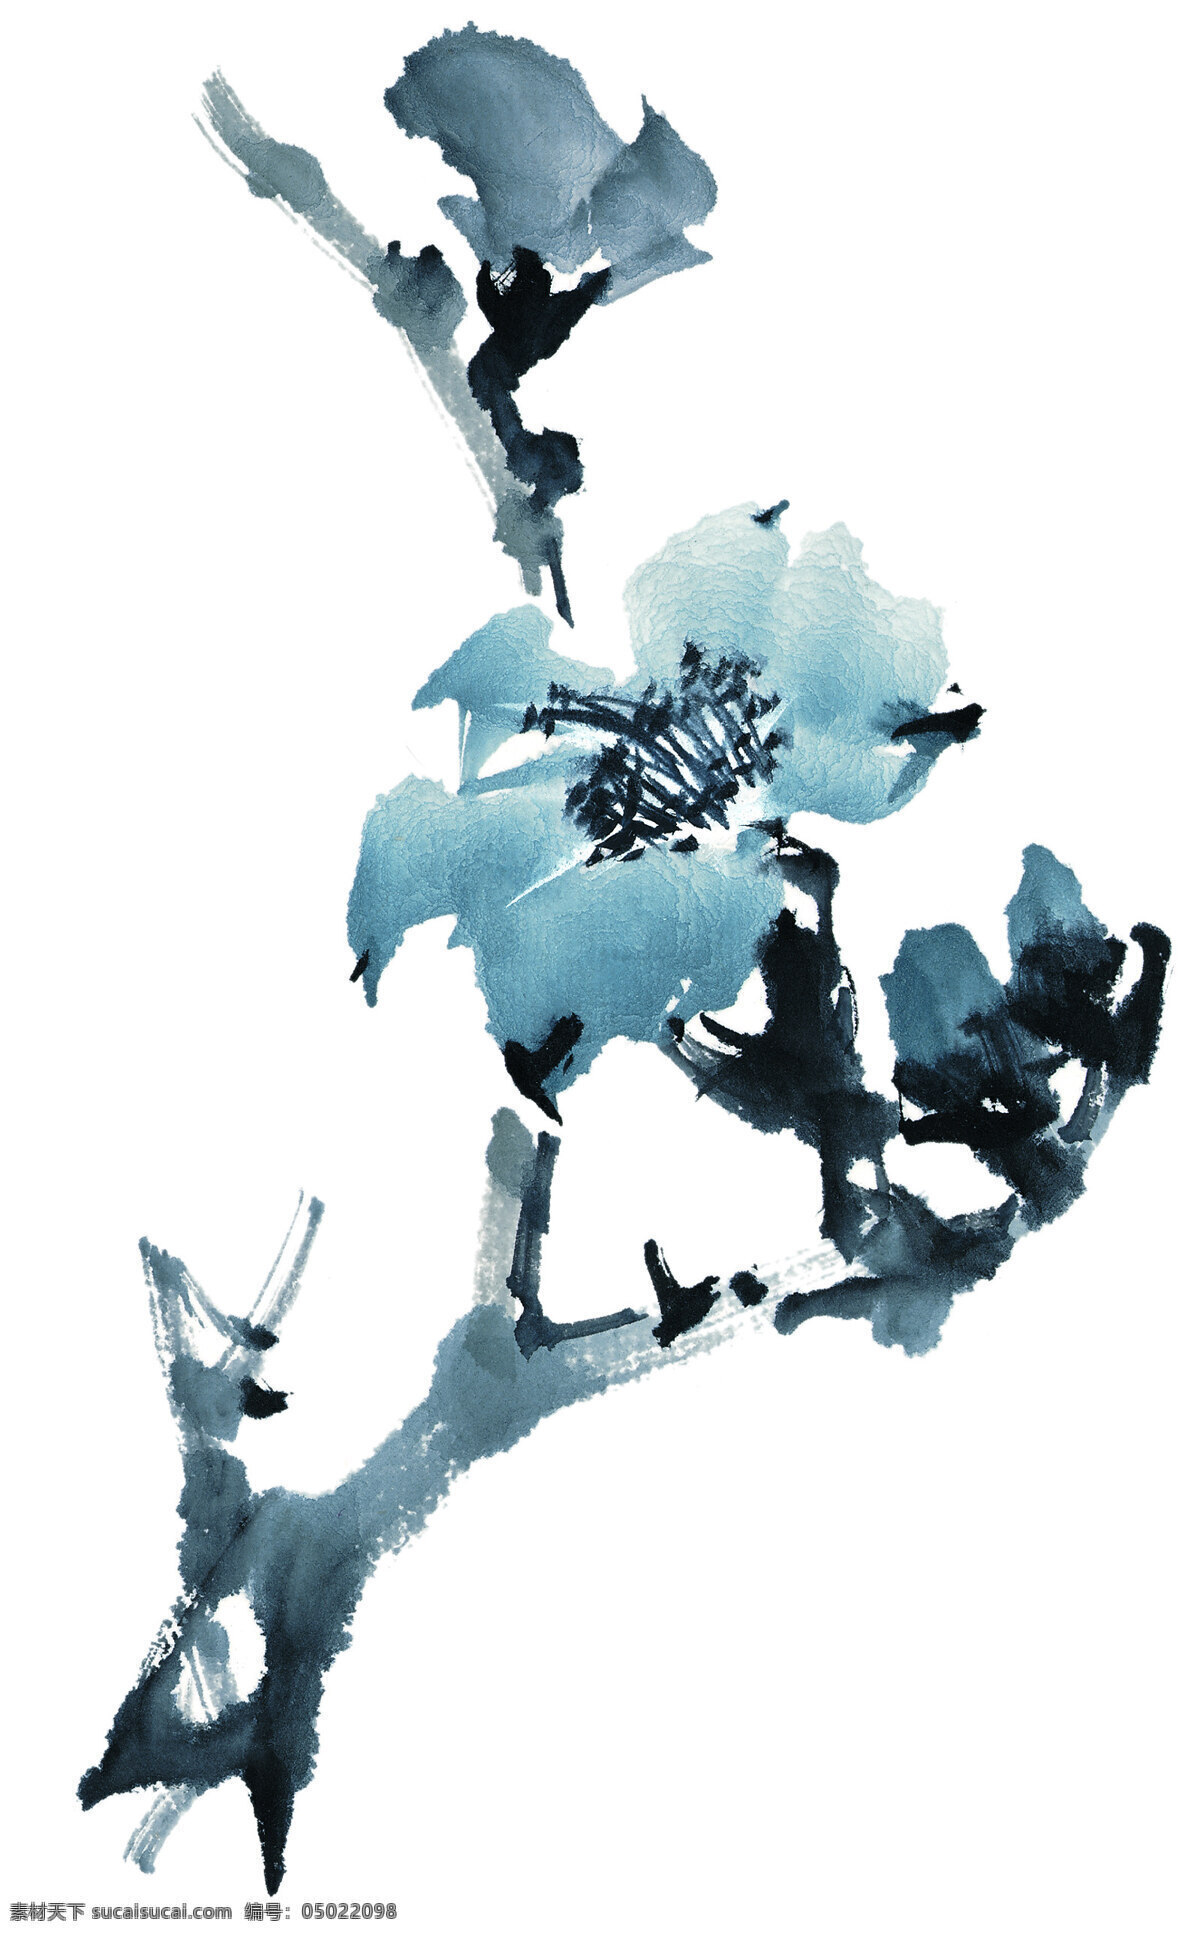 水墨 花卉 白描 工笔 国画 绘画 泼墨 山水 手绘 水墨花卉 文化 中国画 芥子园 艺术 石墨 写意 意境 文化艺术